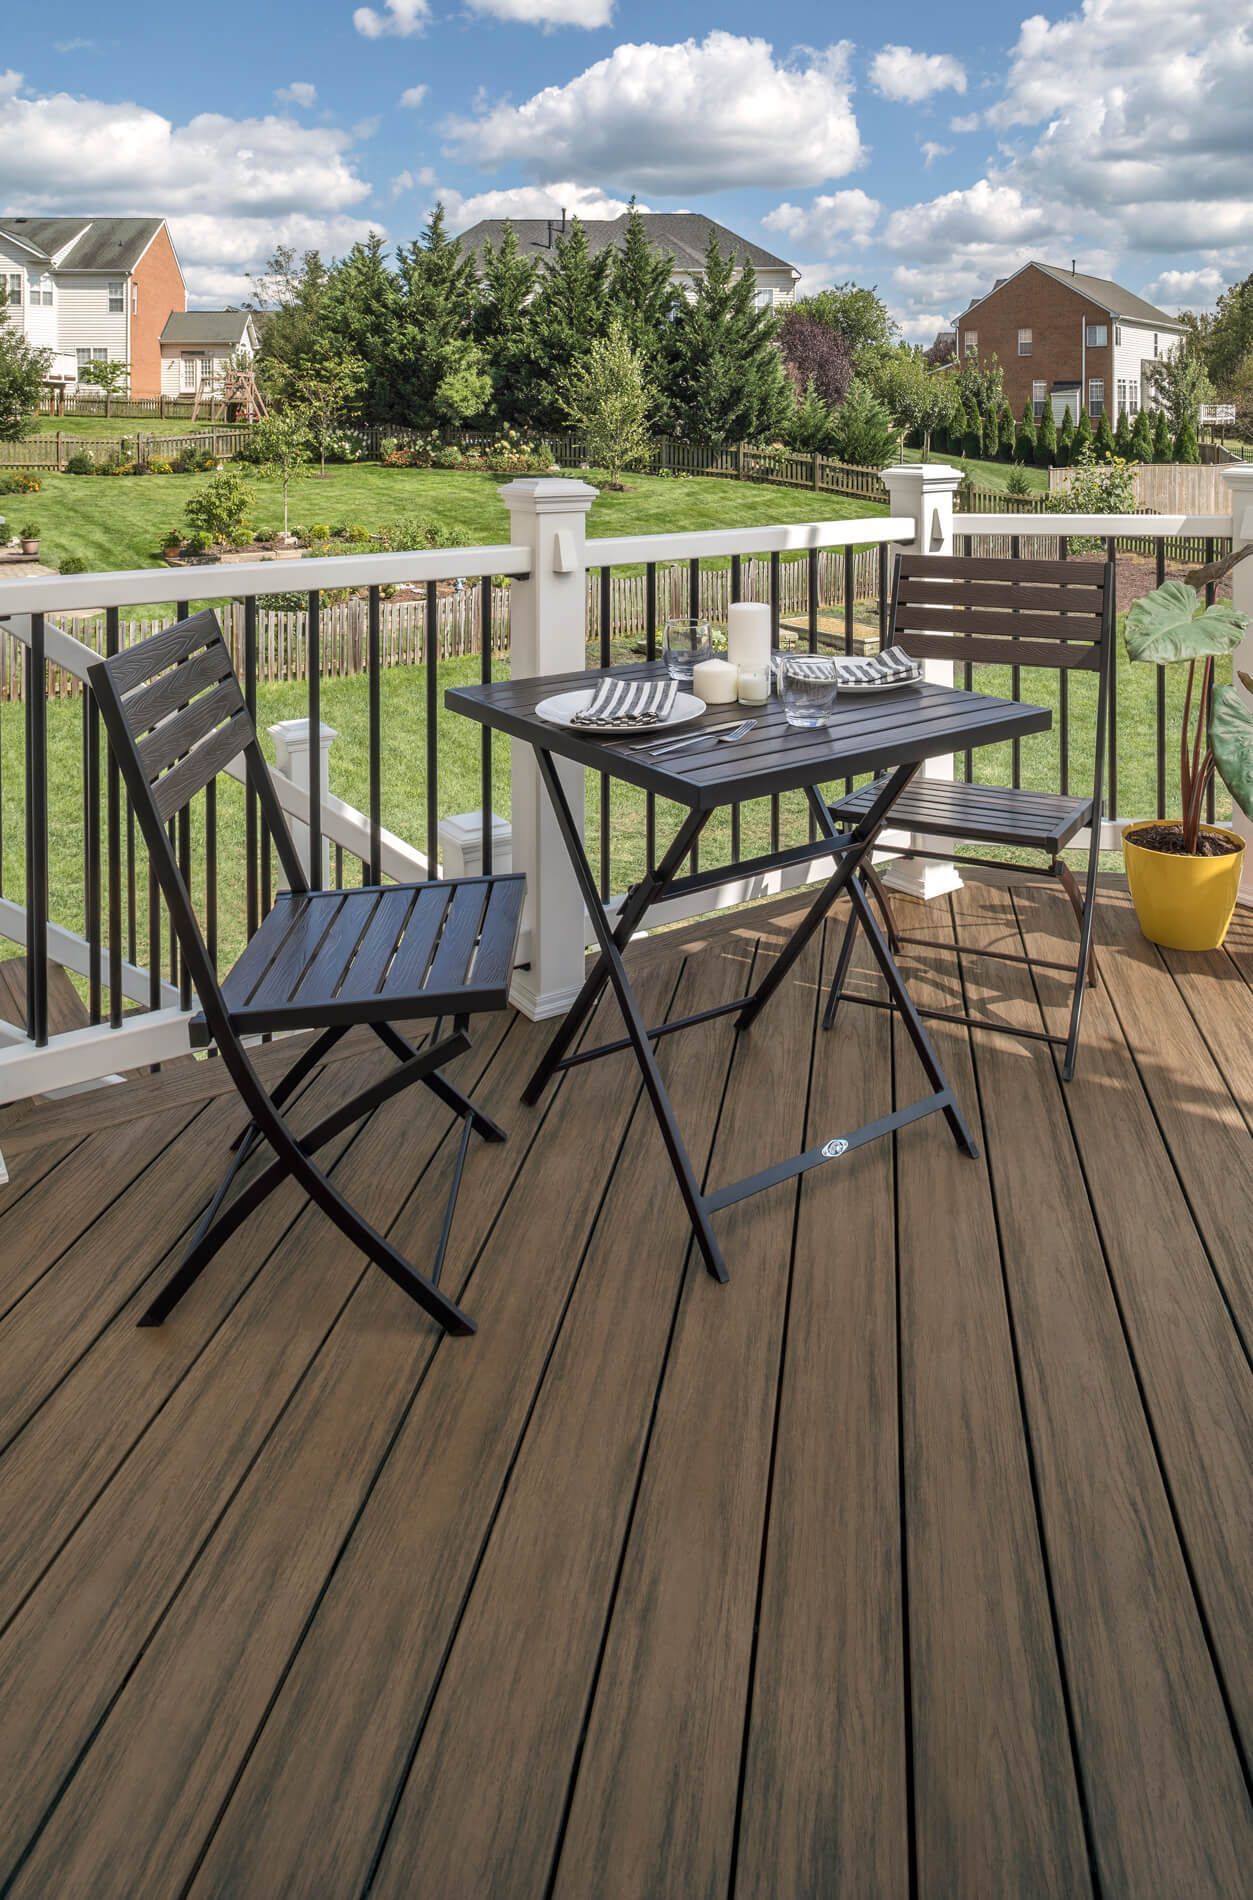 Gediegene Terrasse mit Stühlen und Tisch vor einer schönen Gartenlandschaft.